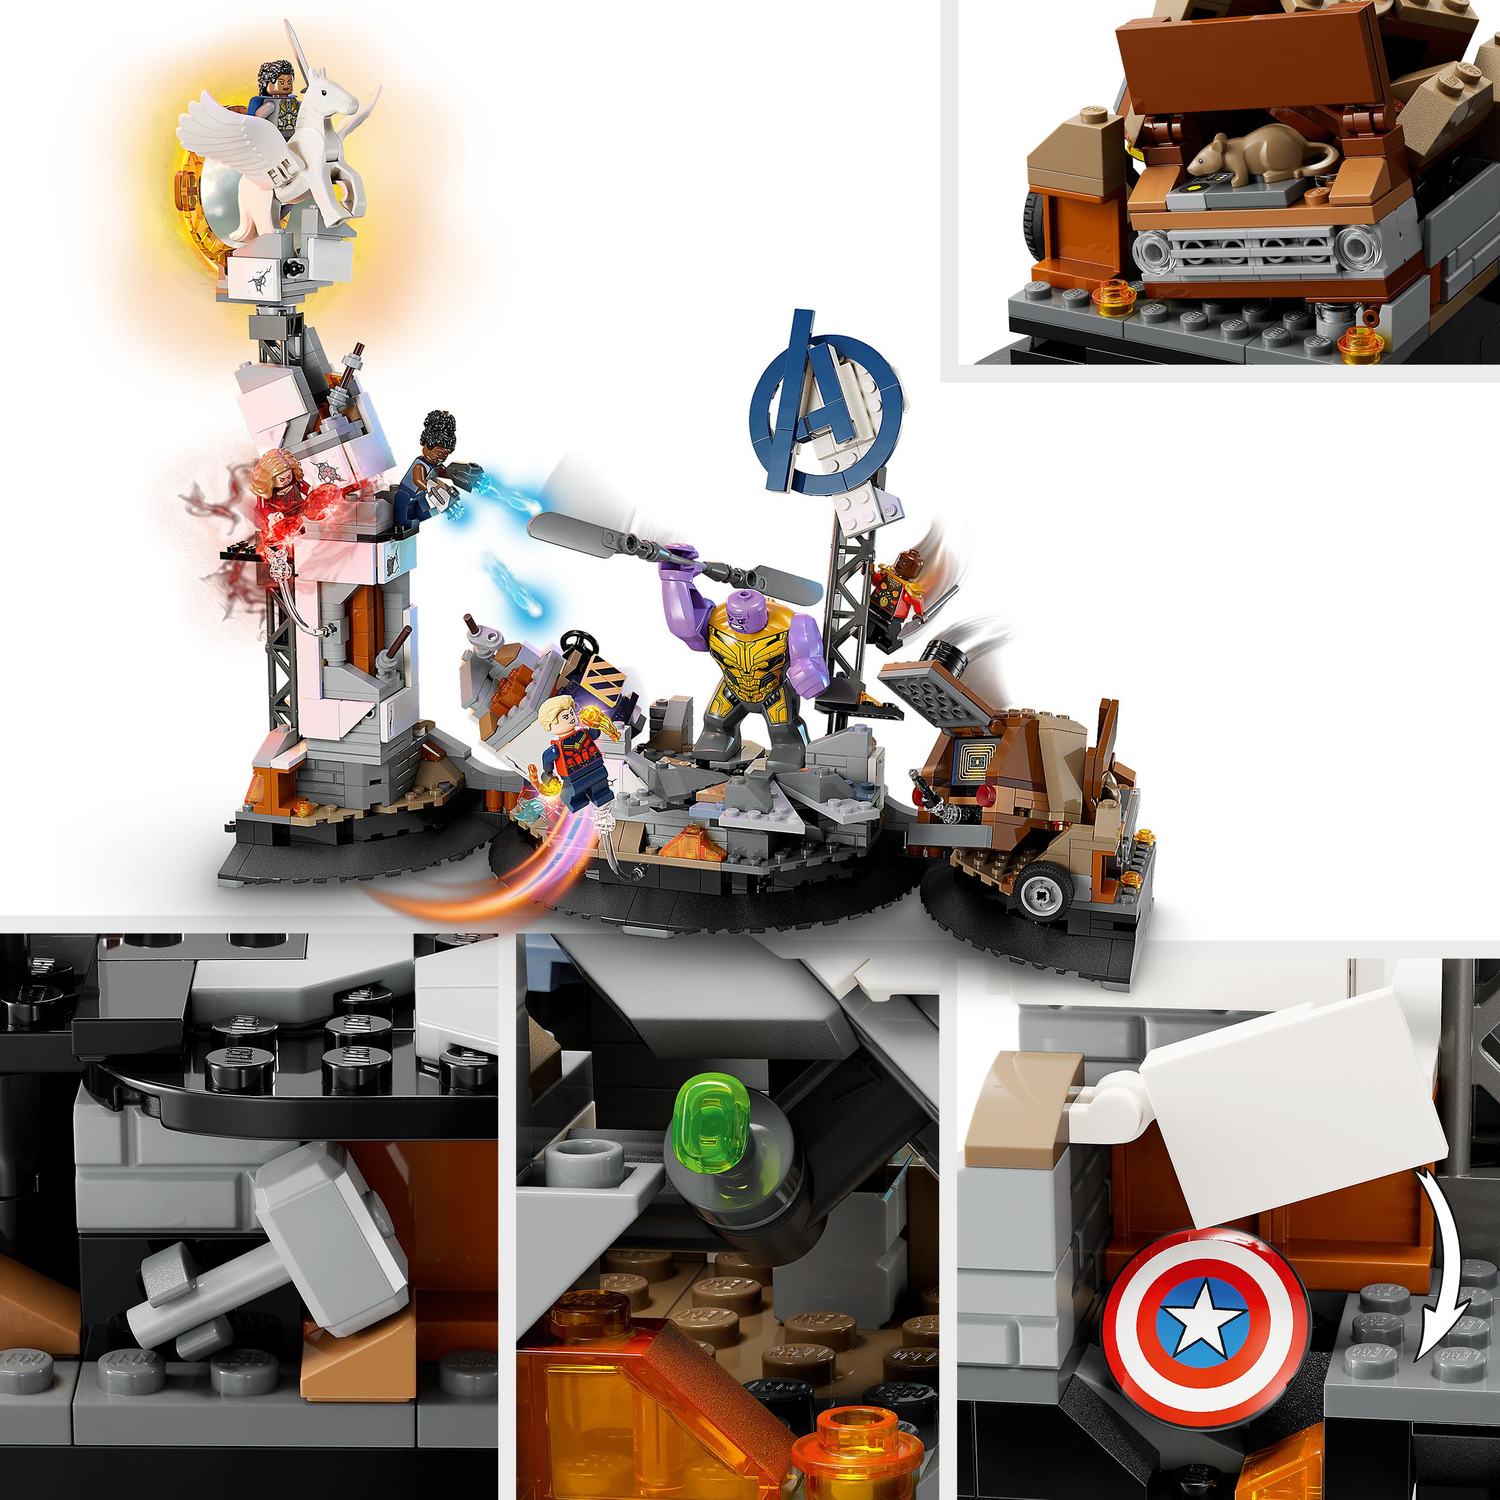 Endgame Final Battle 76266 | Marvel | Buy online at the Official LEGO® Shop  US